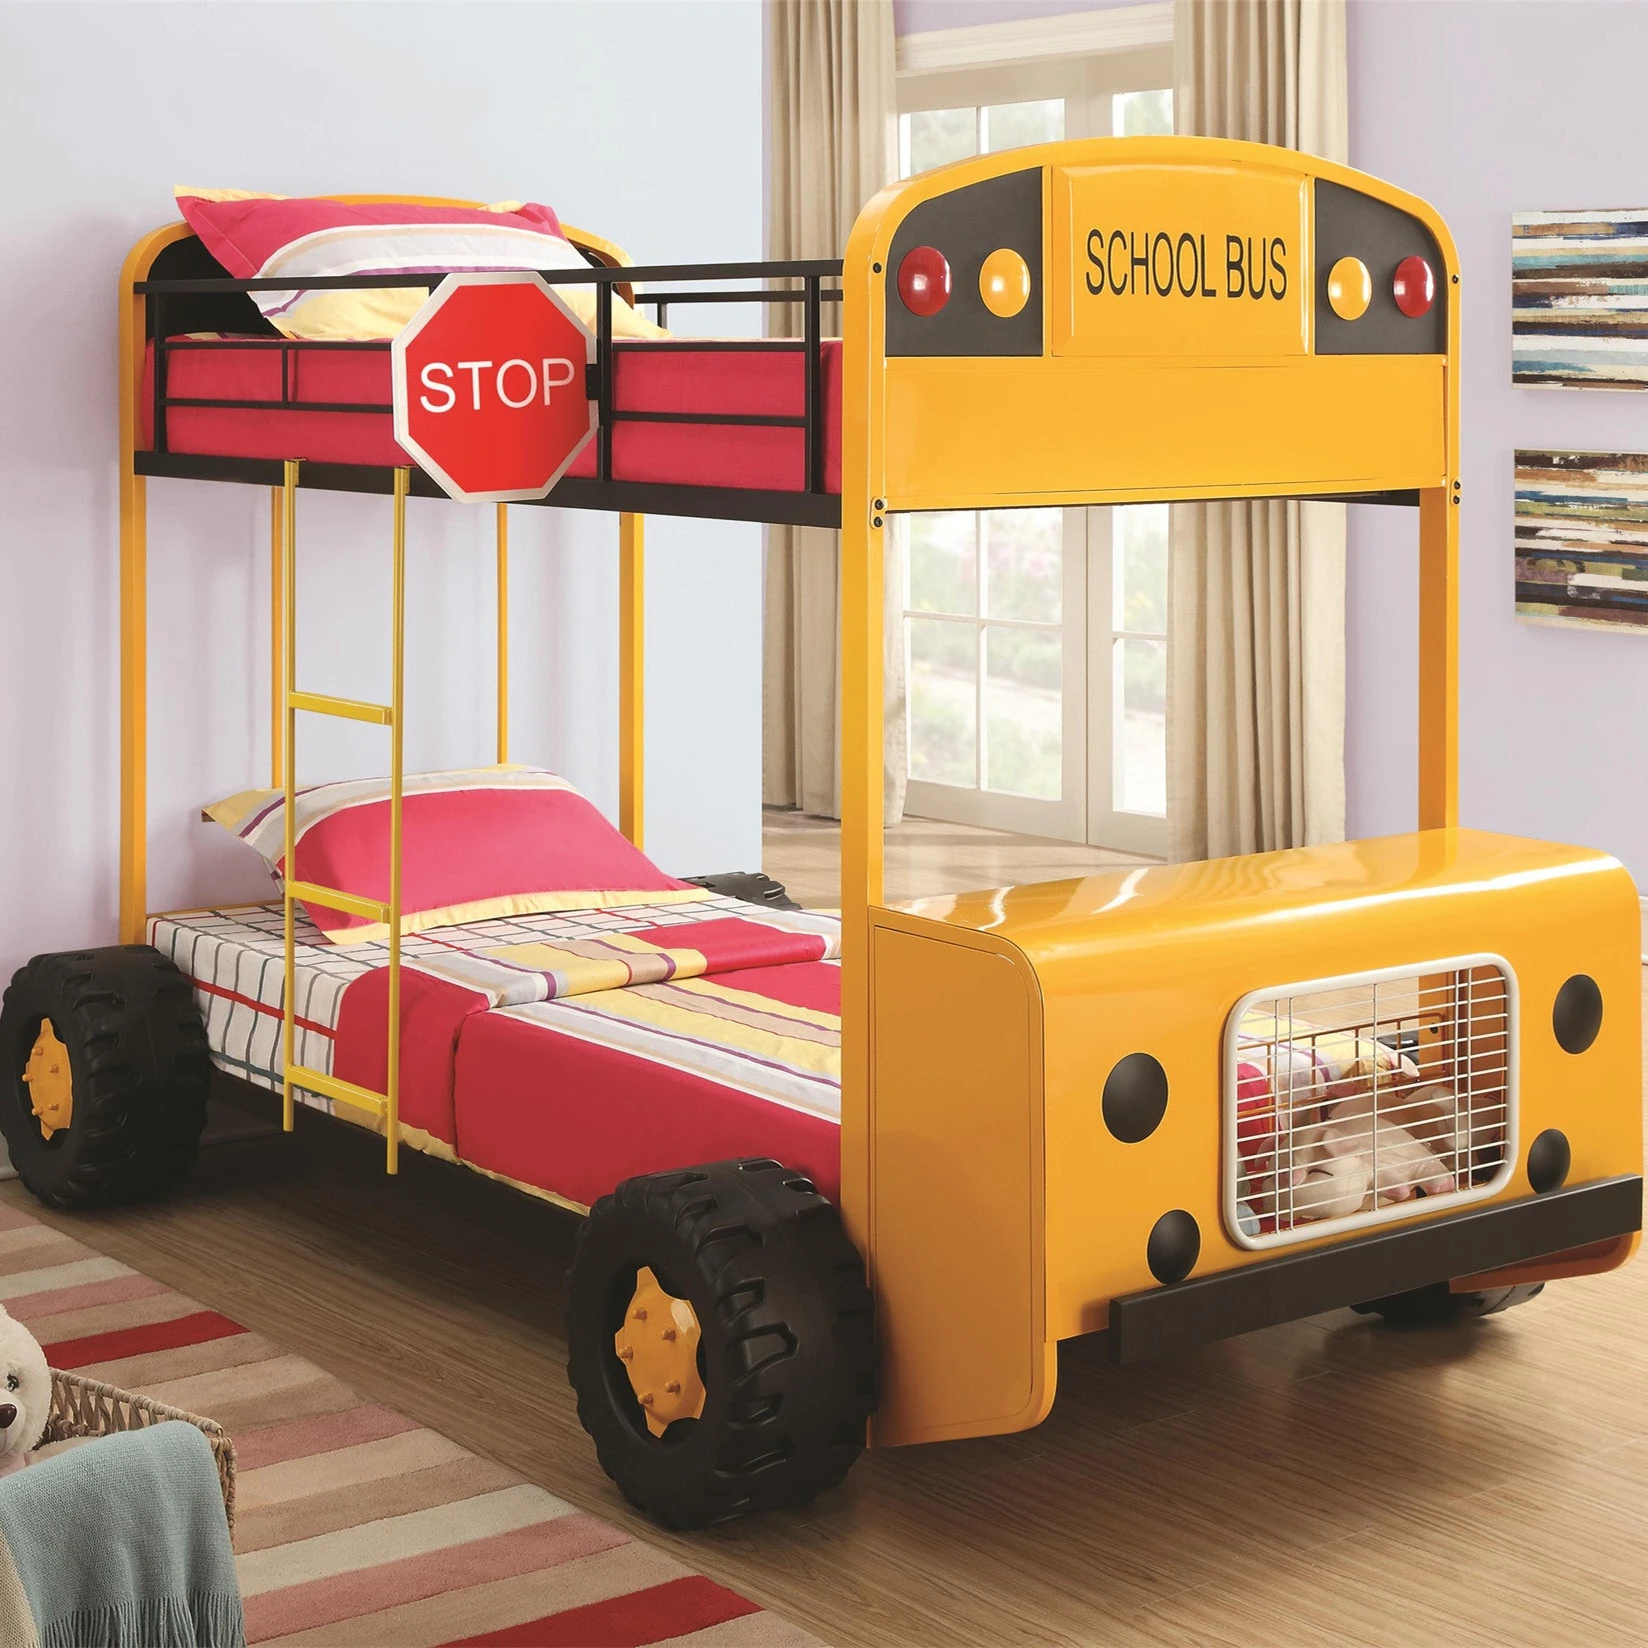 двухъярусная кровать для детей в виде машины